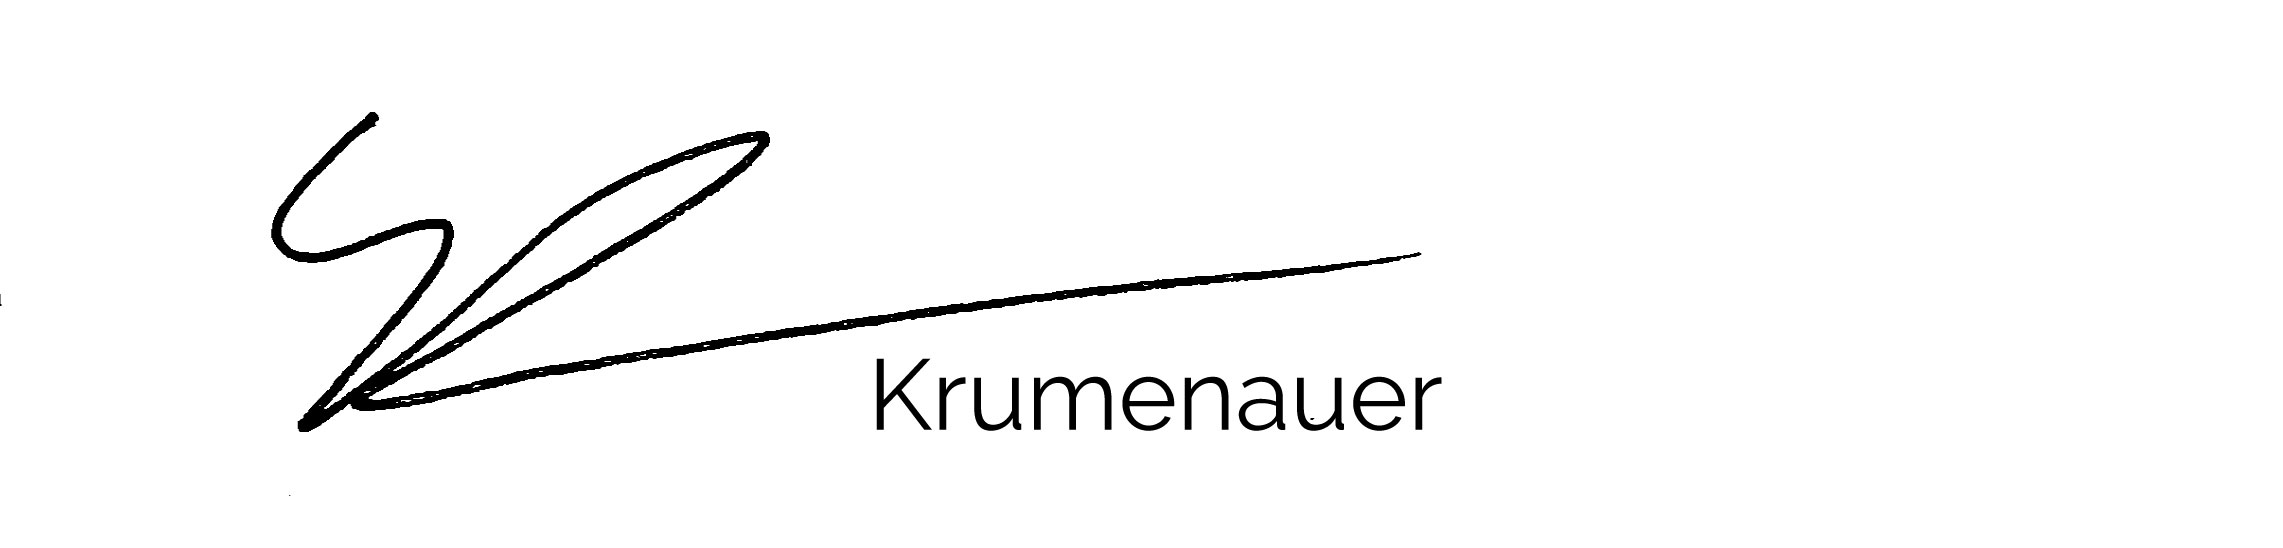 Kevin Krumenauer